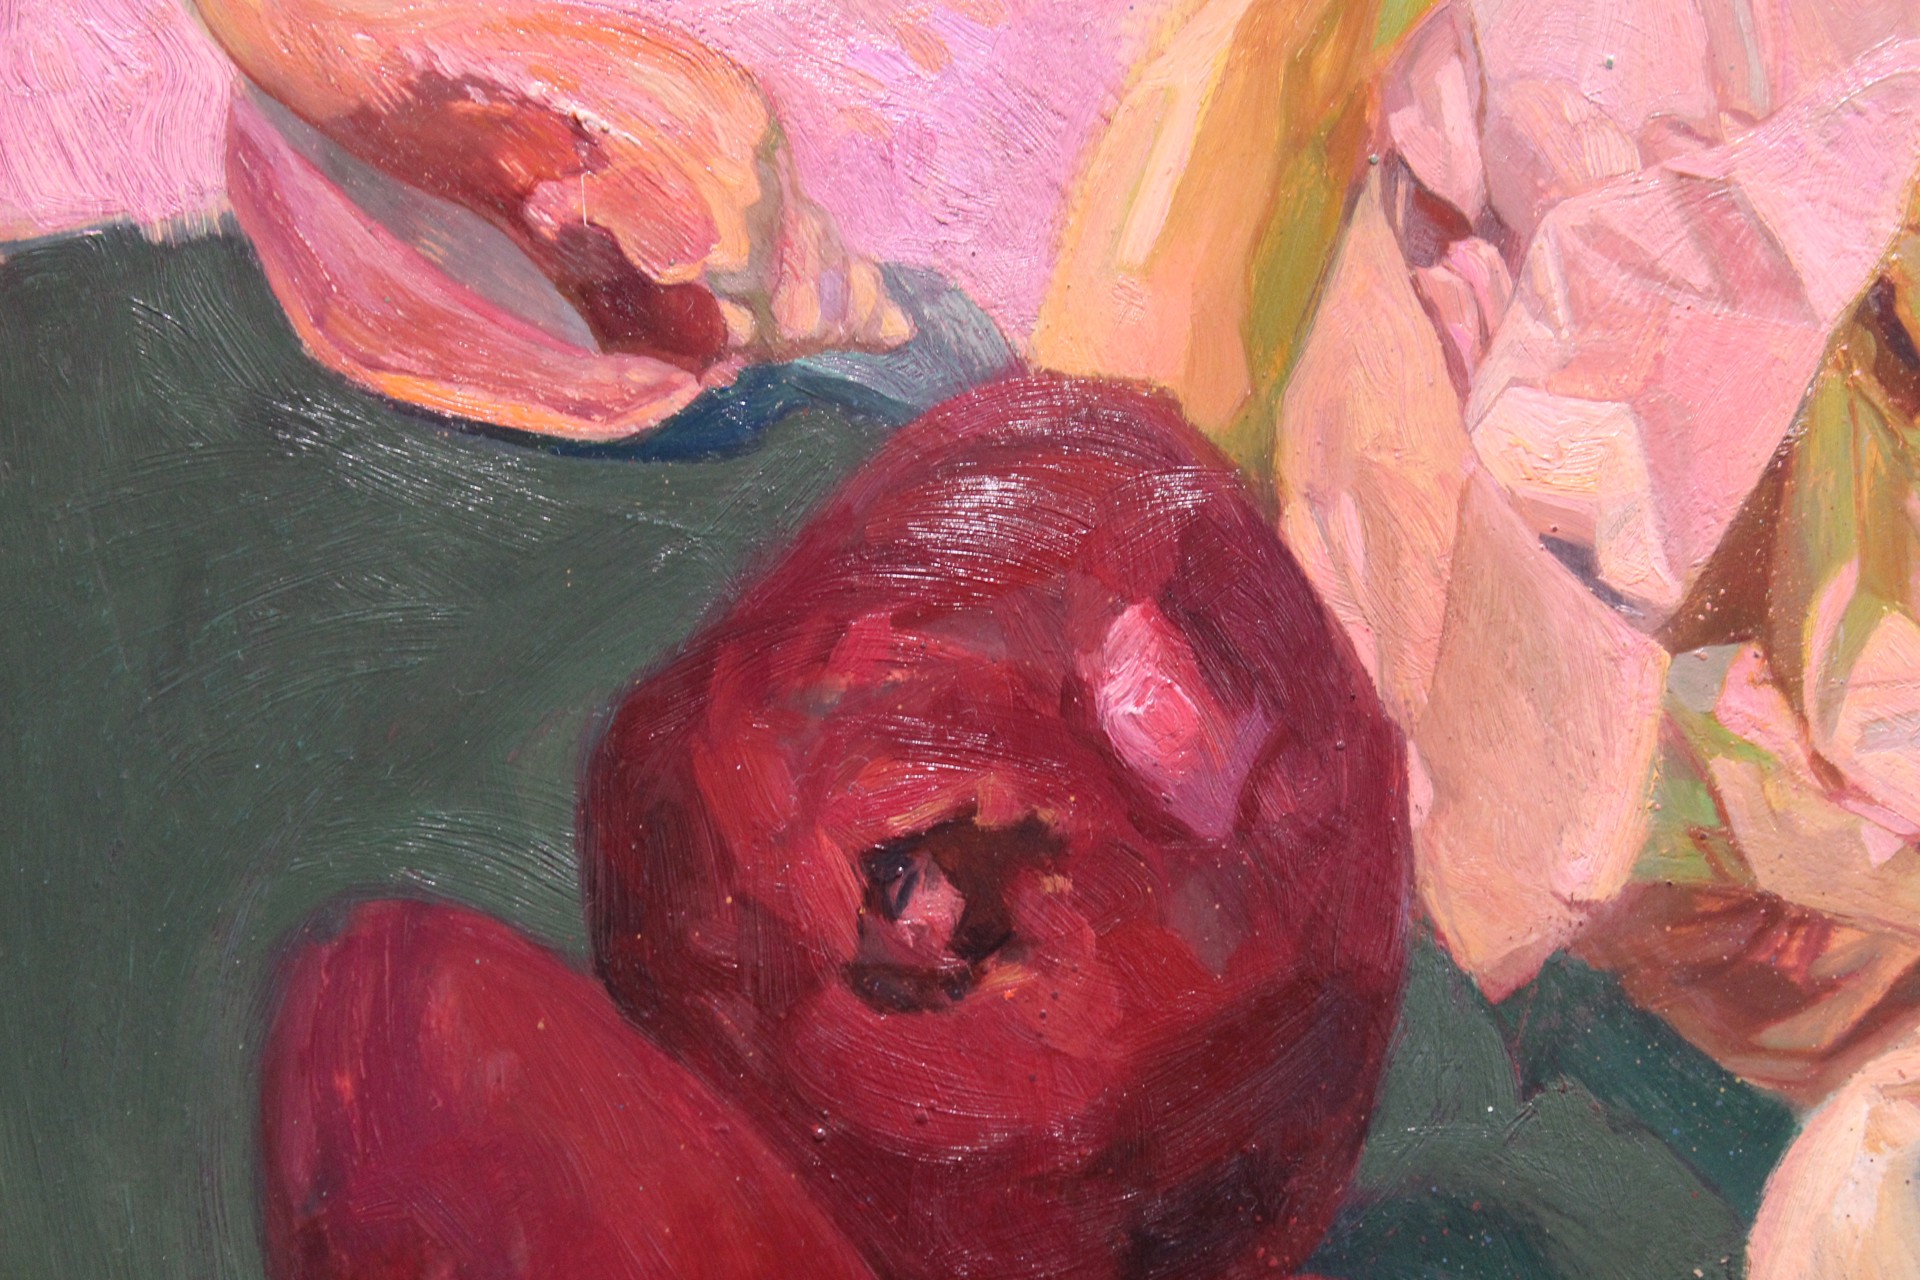 Carbonara with Pomegranate by Benjamin J. Shamback